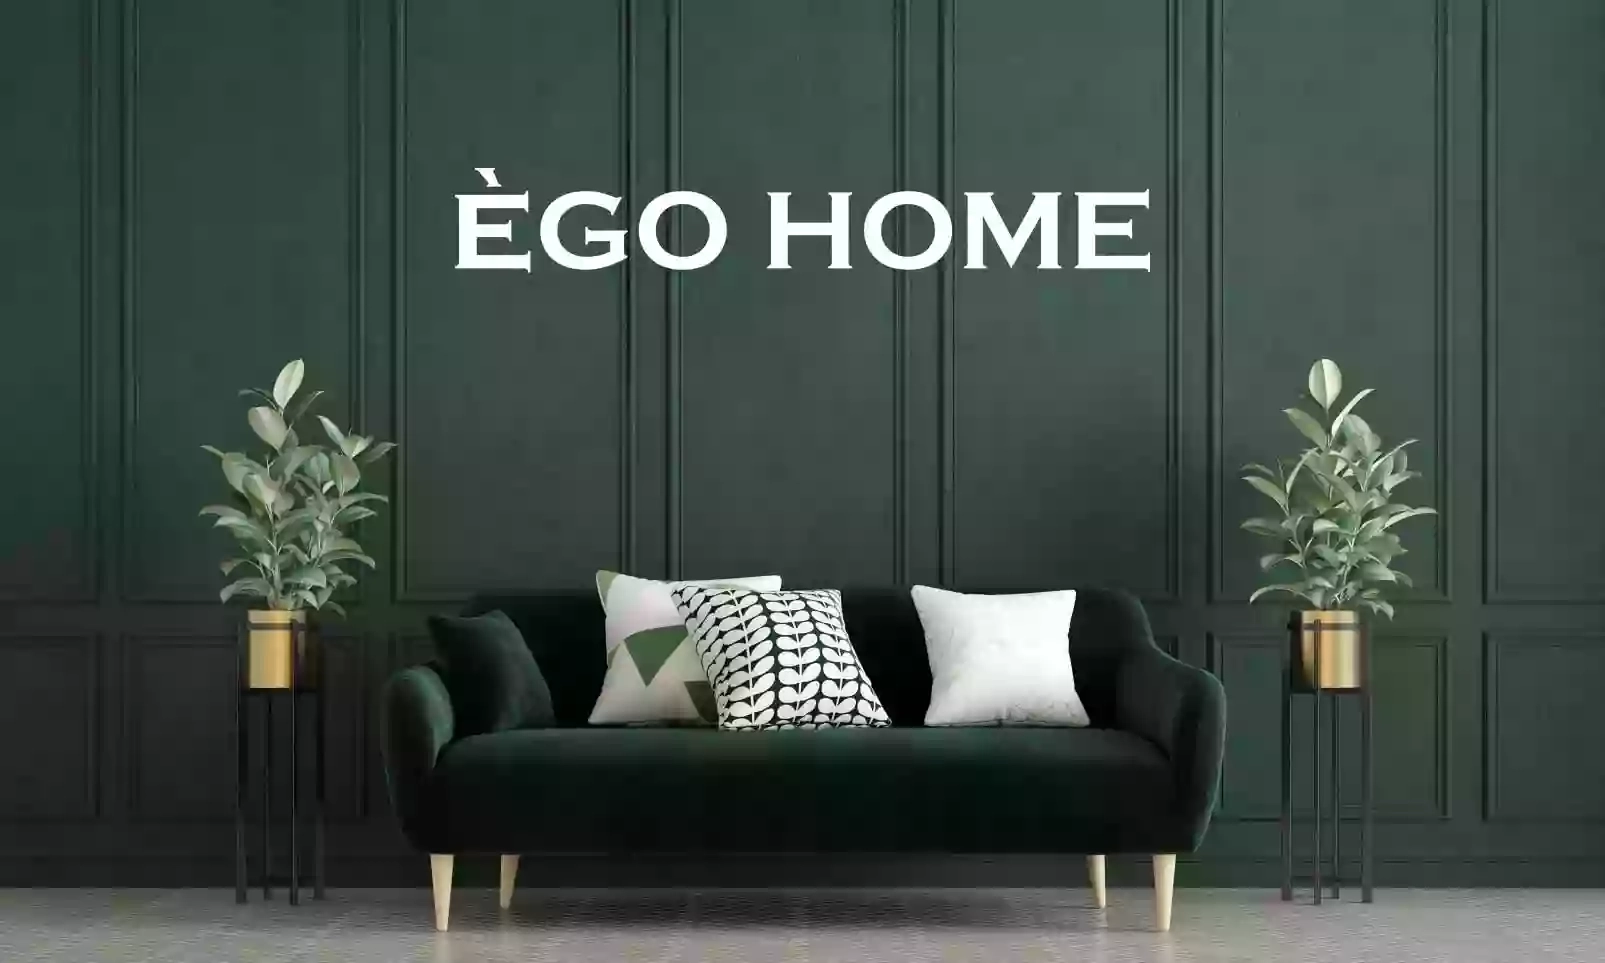 EGO HOME